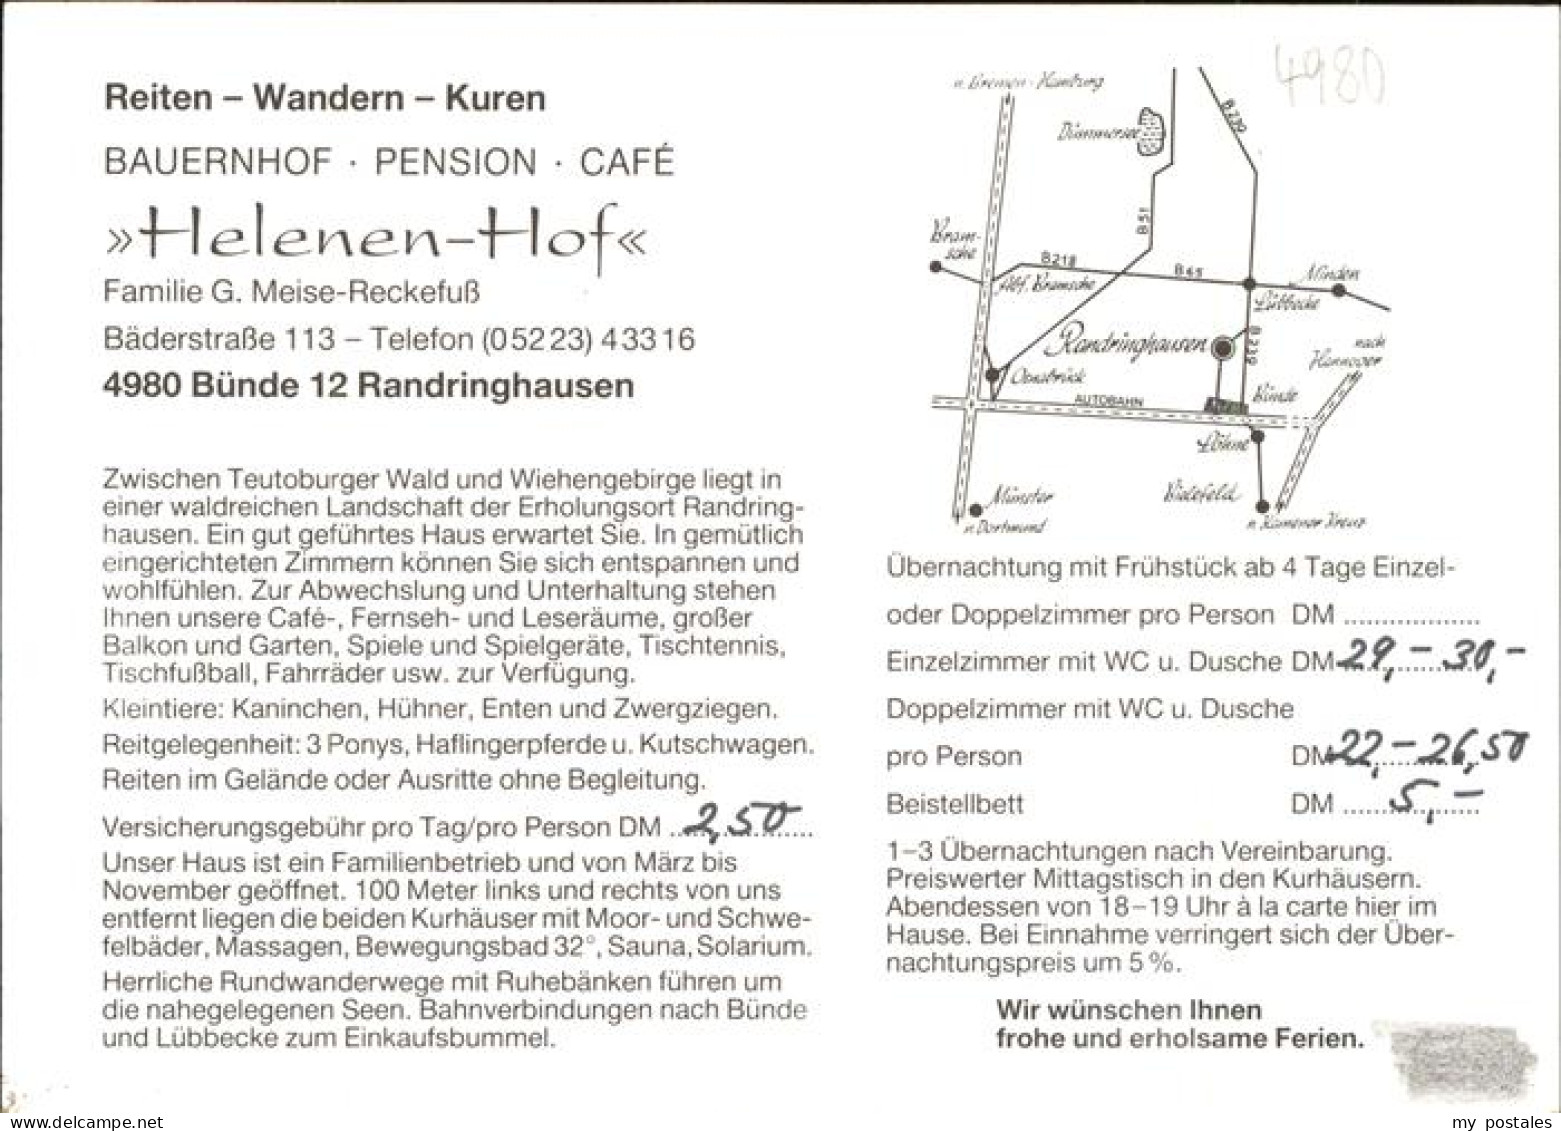 41277033 Bad Randringhausen Pension Cafe Helenen Hof Ausritt Bad Randringhausen - Buende